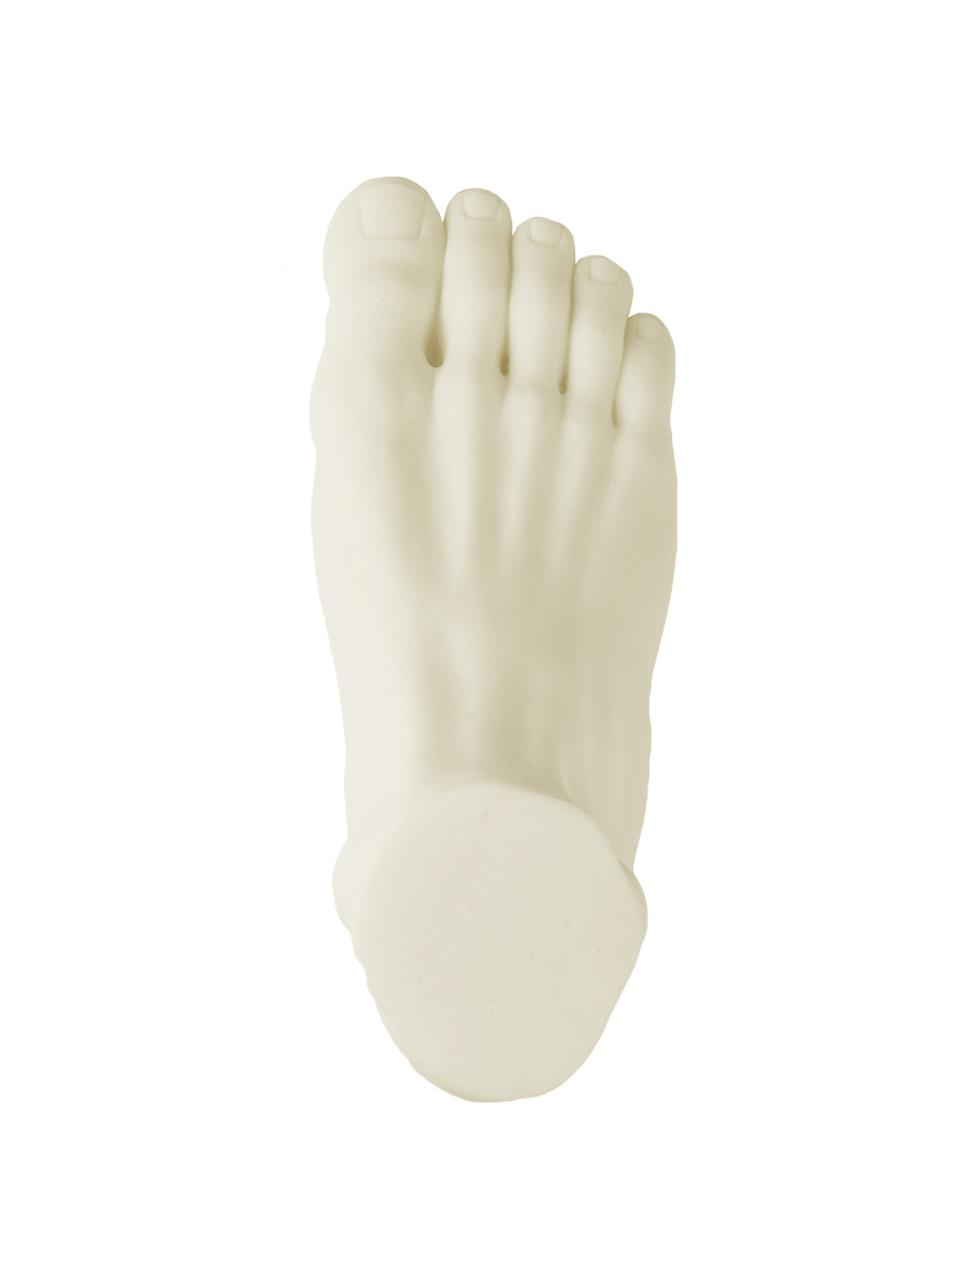 Dekorace Foot, Pryskyřice, mramorový prášek, Krémově bílá, Š 28 cm, V 15 cm